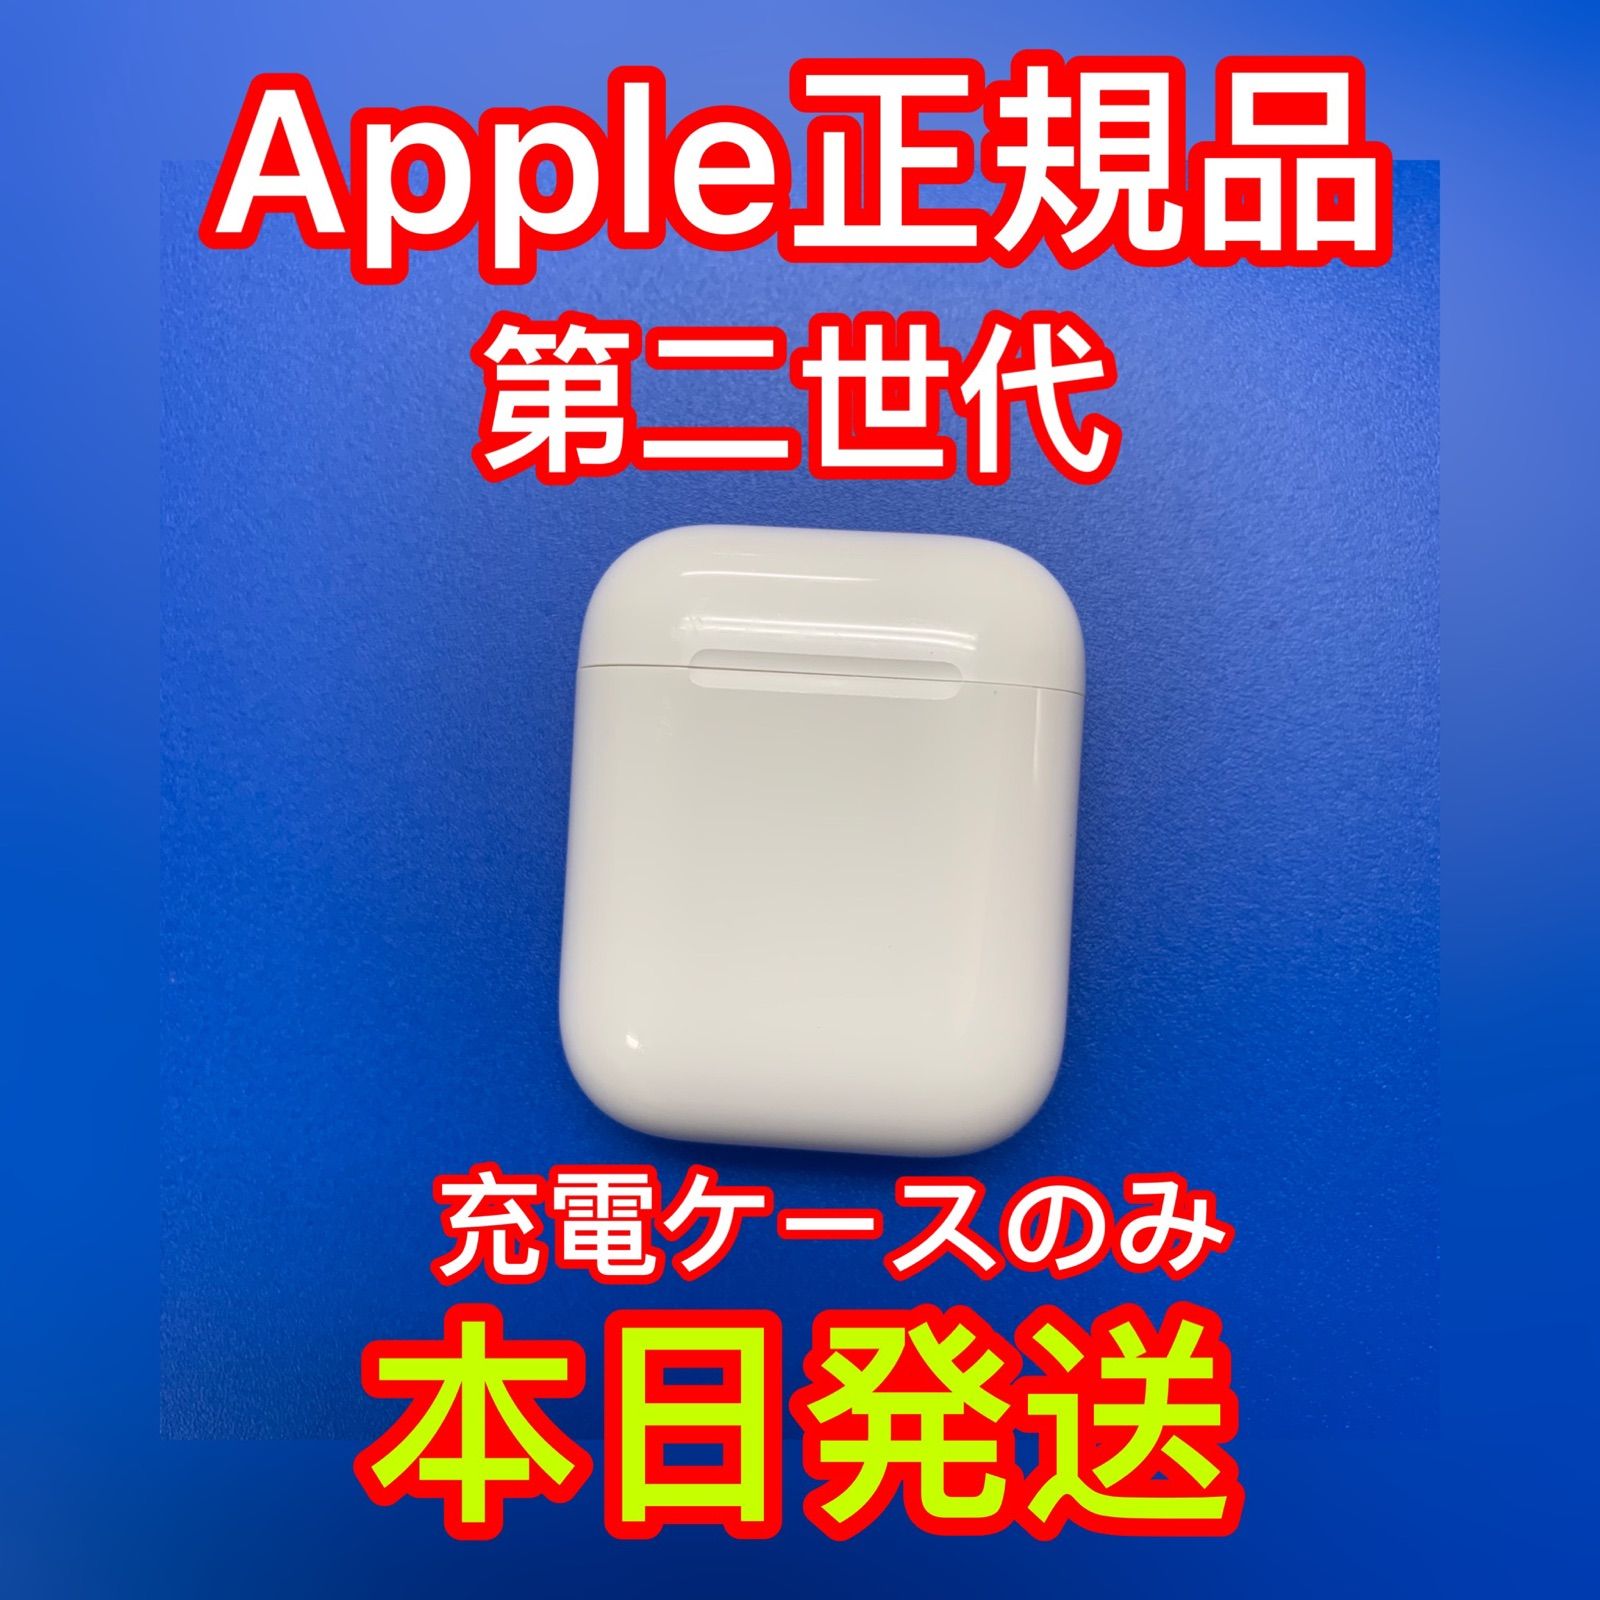 名入れ無料 Apple正規品 エアーポッズ AirPods 国内正規品 第二世代